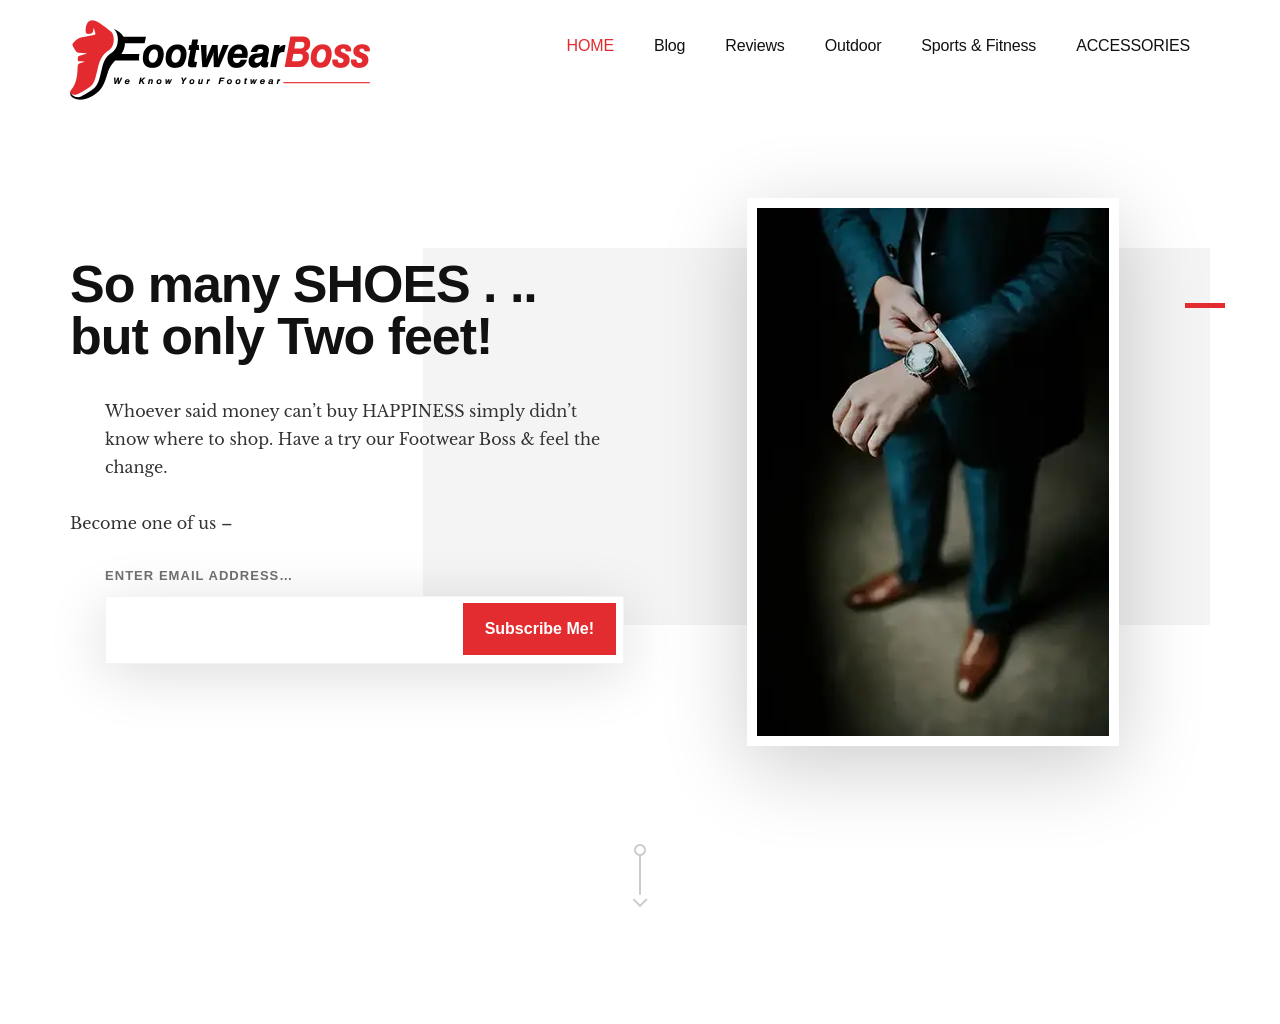 footwearboss.com